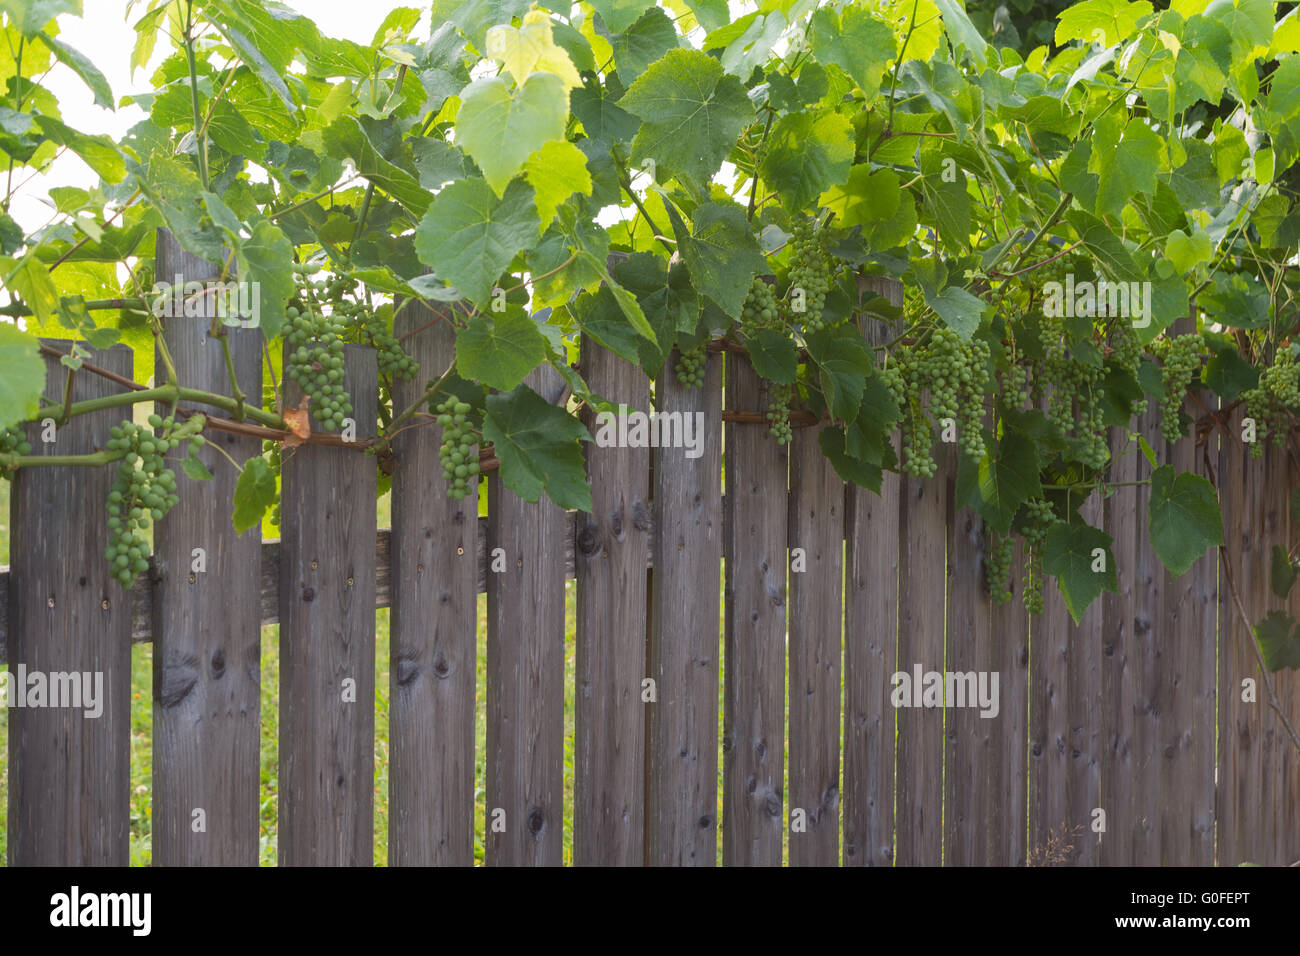 green grapes along a garden fence Stock Photo